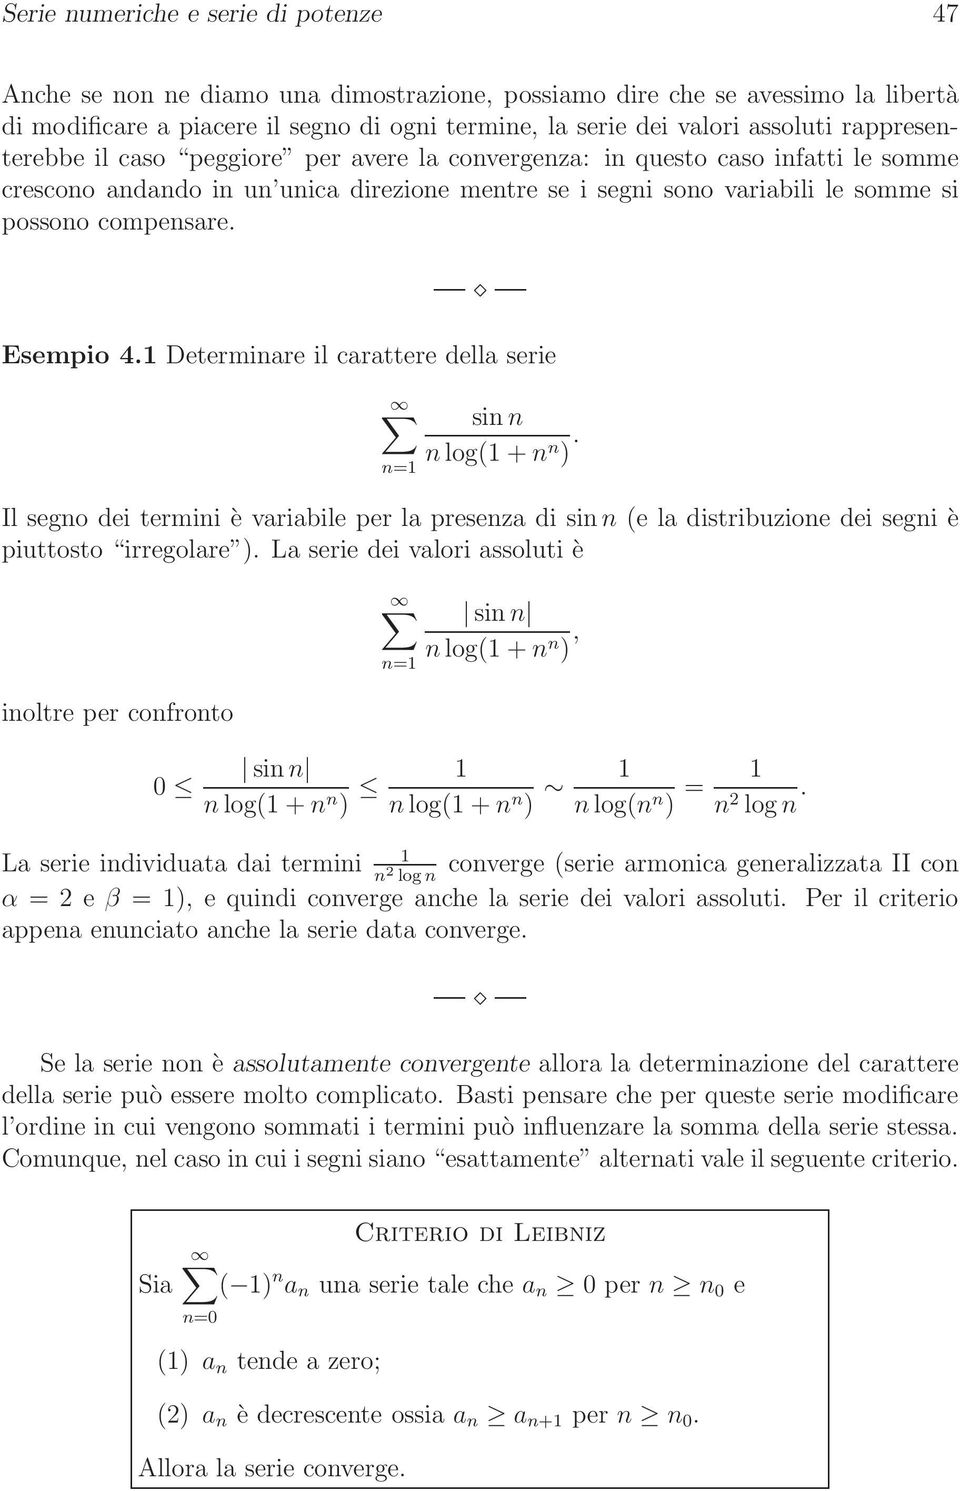 il carattere della serie si log + Il sego dei termii è variabile per la preseza di si e la distribuzioe dei segi è piuttosto irregolare La serie dei valori assoluti è ioltre per cofroto 0 si log +,